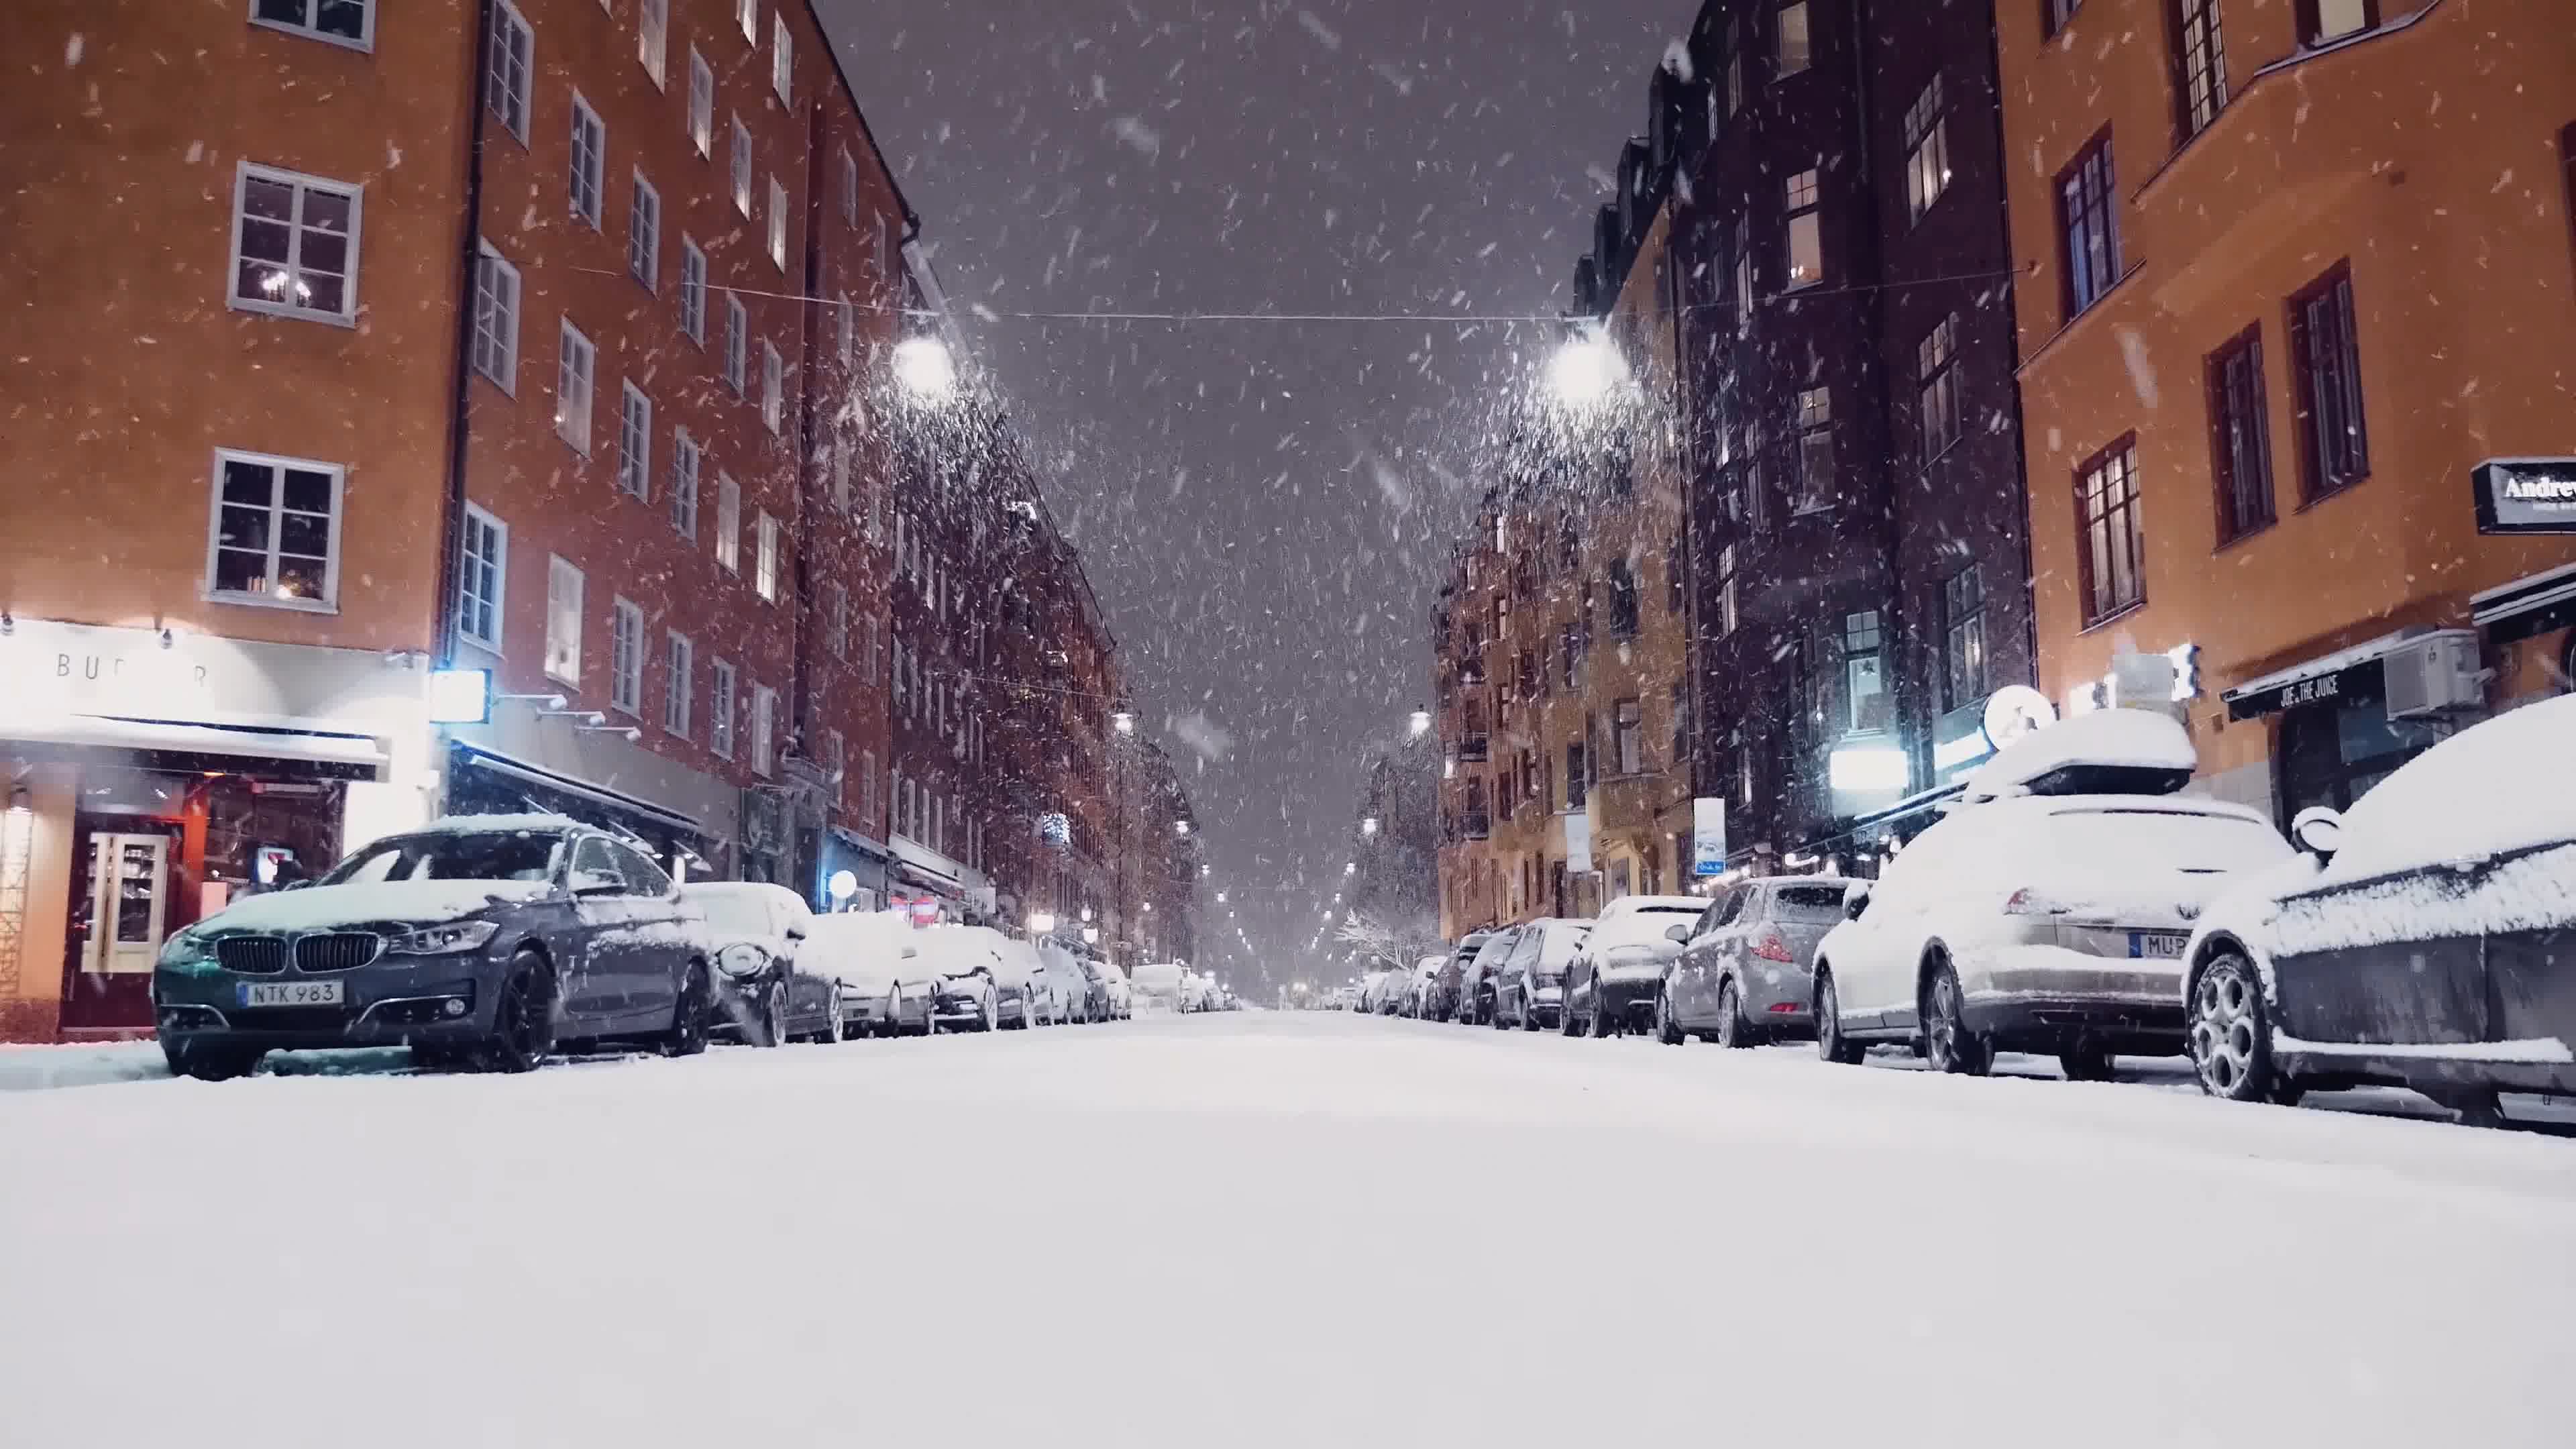 当雪景遇见夜色：夜晚雪景的6个拍摄技巧，把下雪天玩出新创意 - 哔哩哔哩